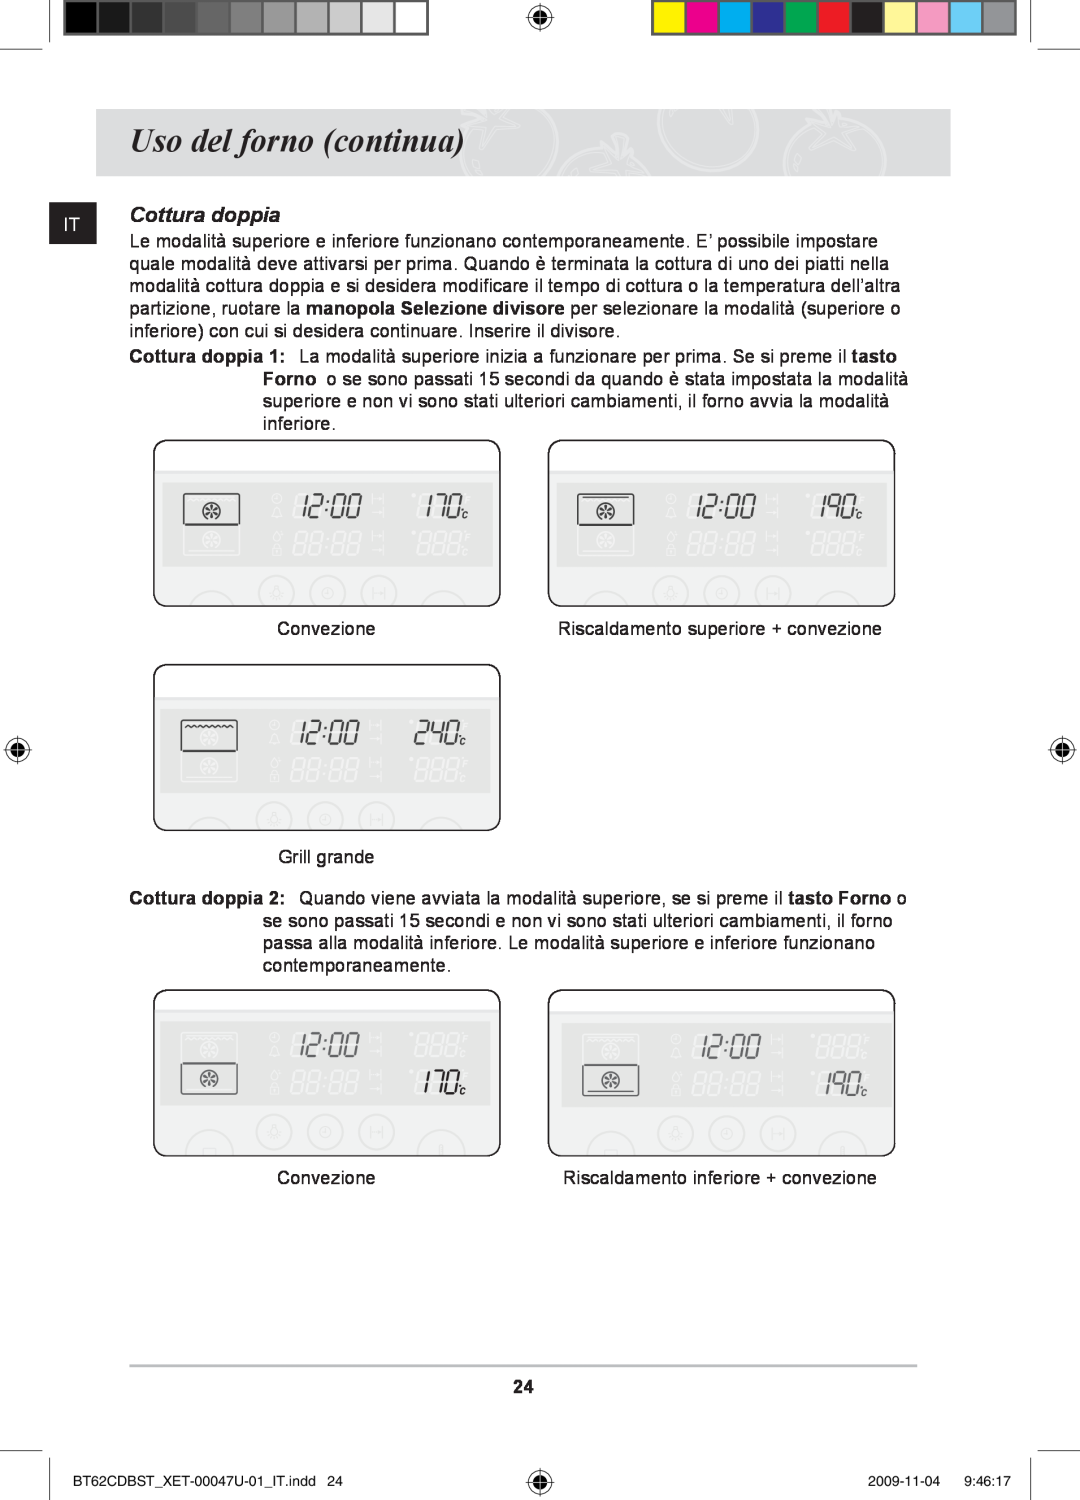 Samsung BT62CDBST/XET manual Cottura doppia, Uso del forno continua 